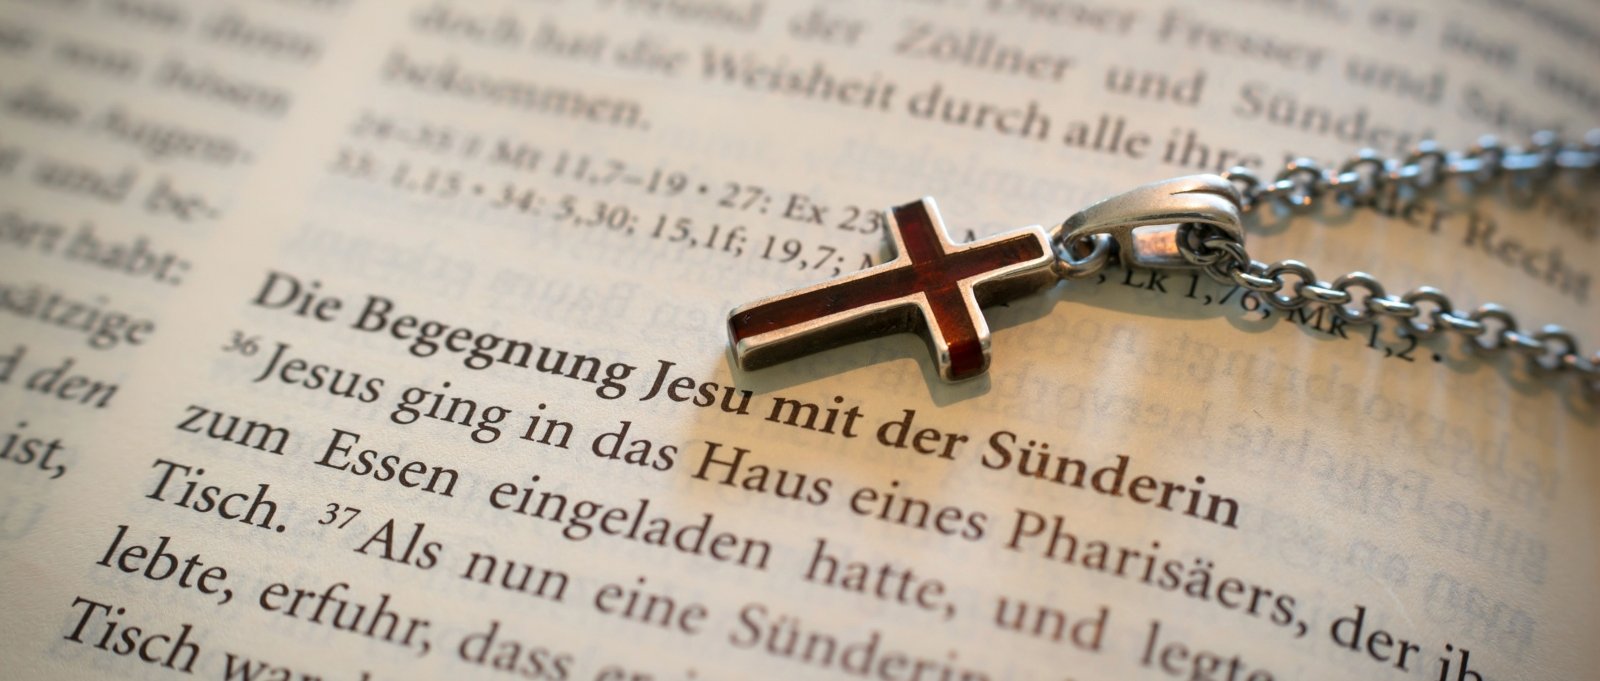 Bibel Sünderin Beichte (c) Didgeman / Pixabay.com